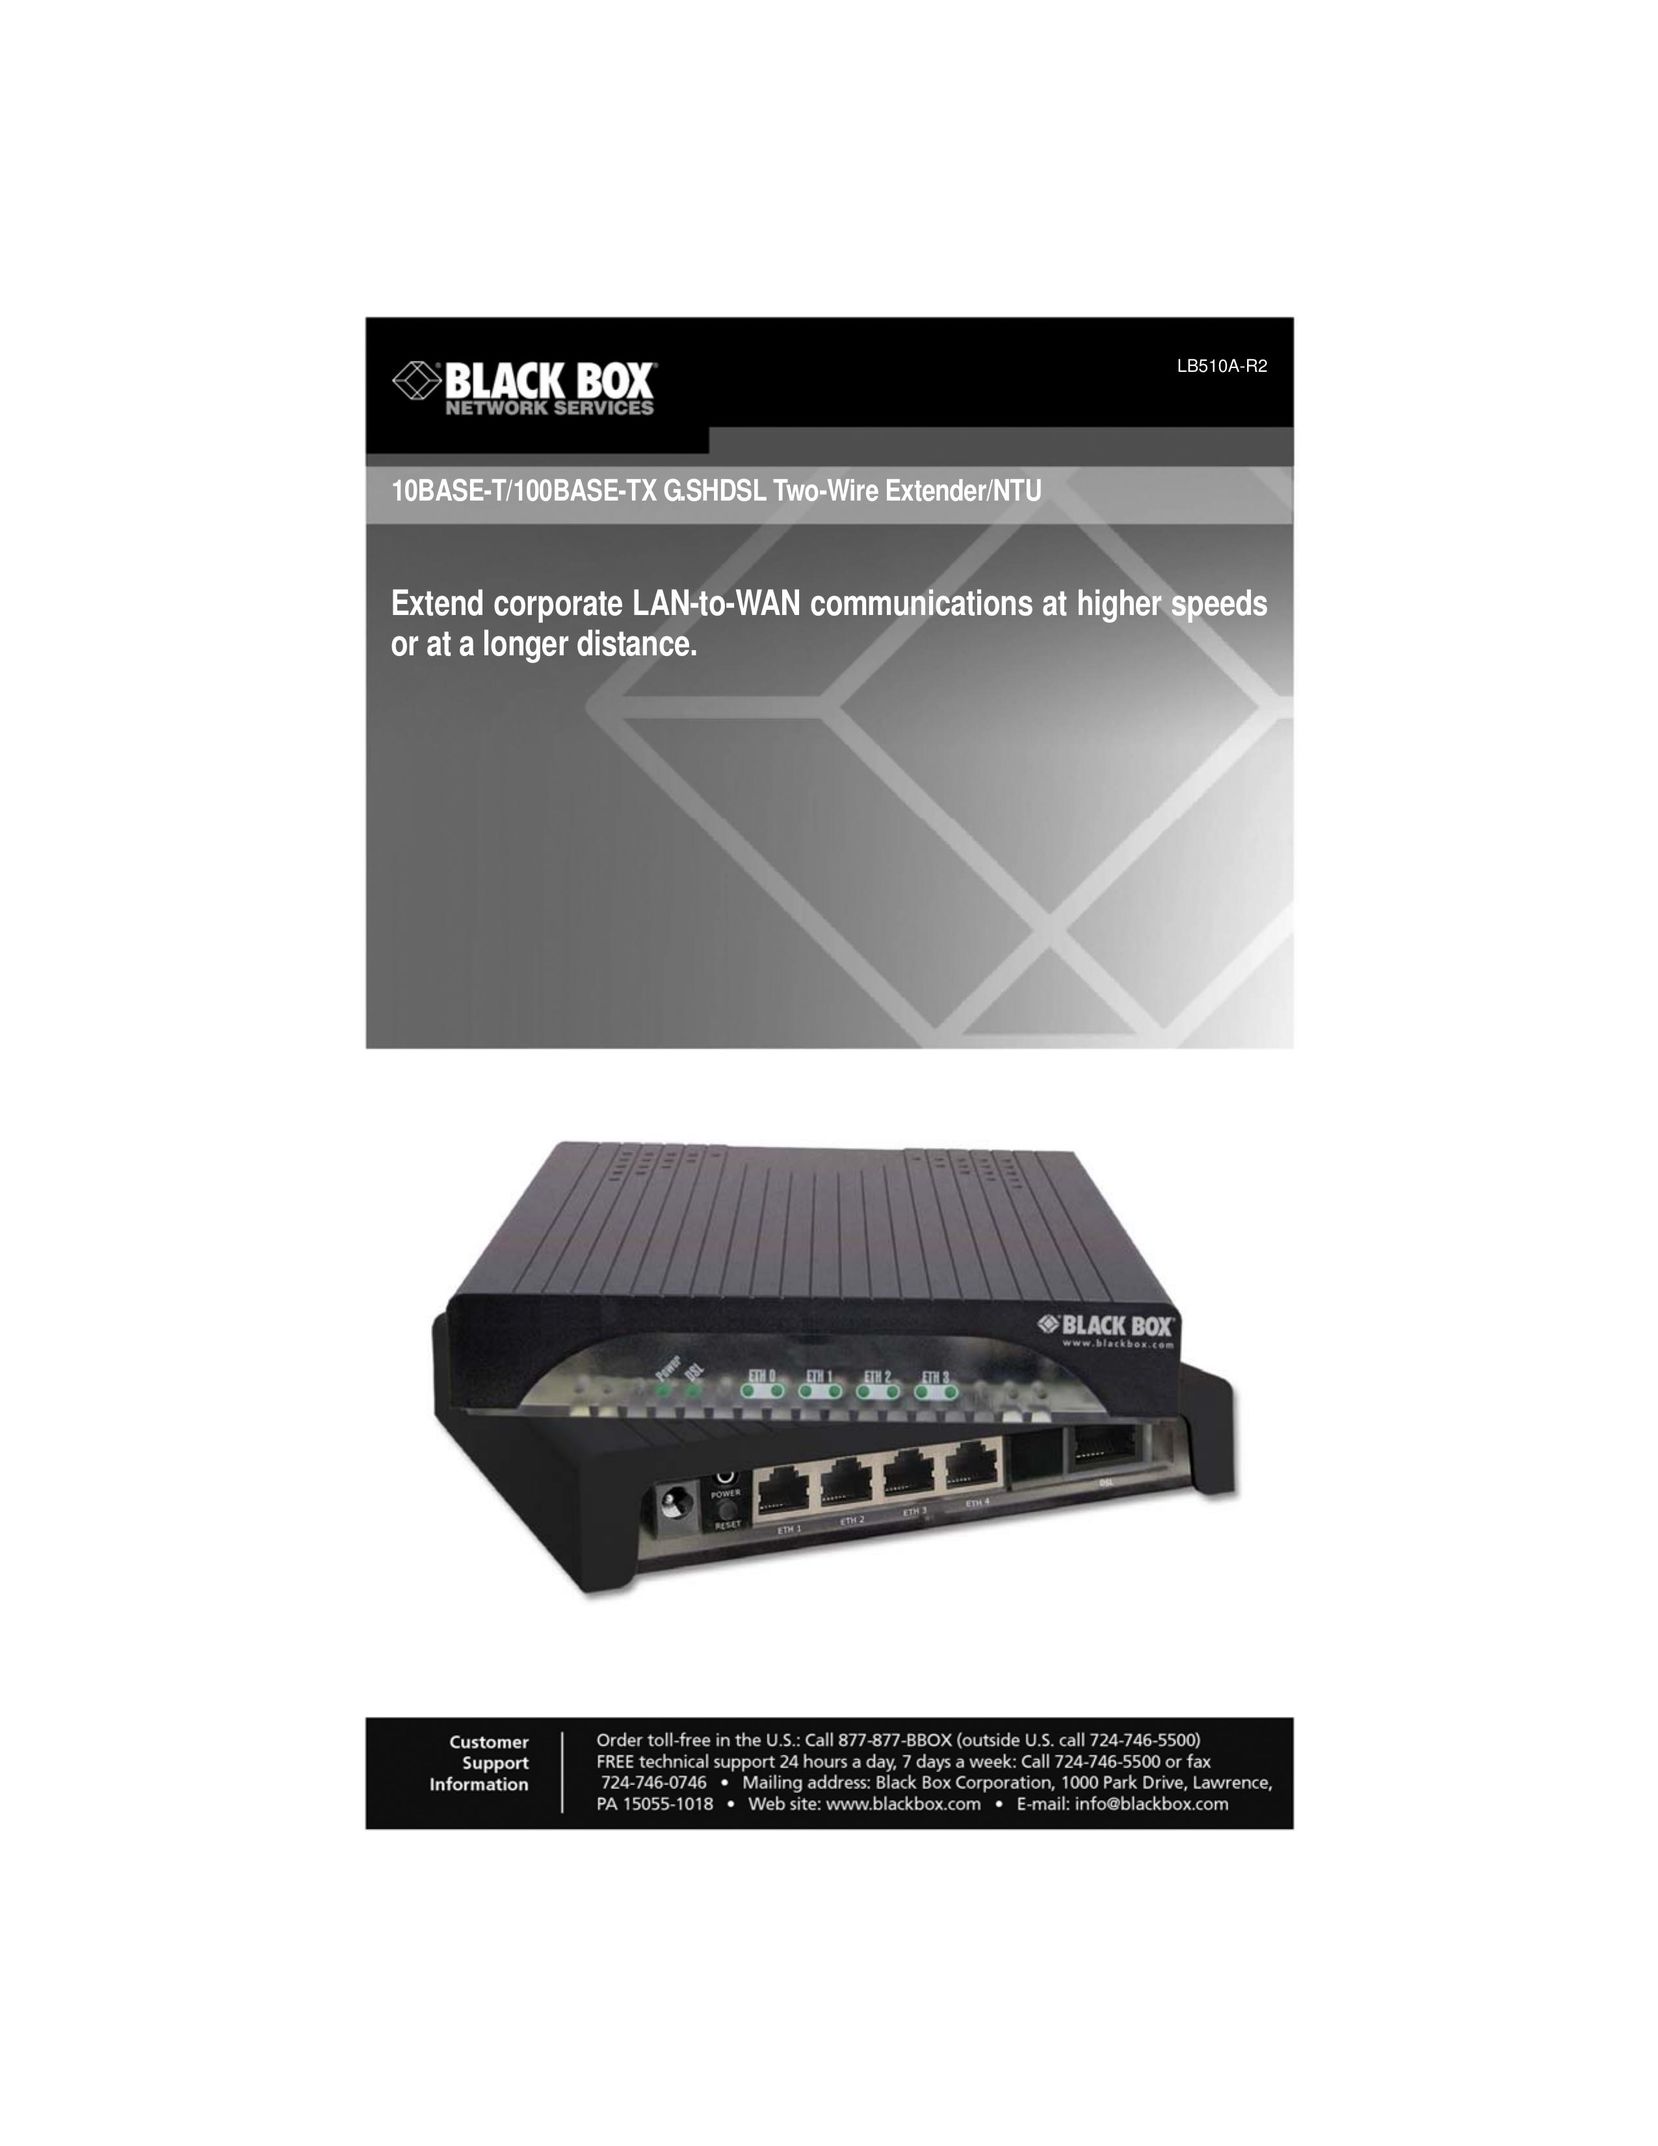 Black Box 10BASE-T/100BASE-TX G.SHDSL Two-Wire Extender/NTU Switch User Manual